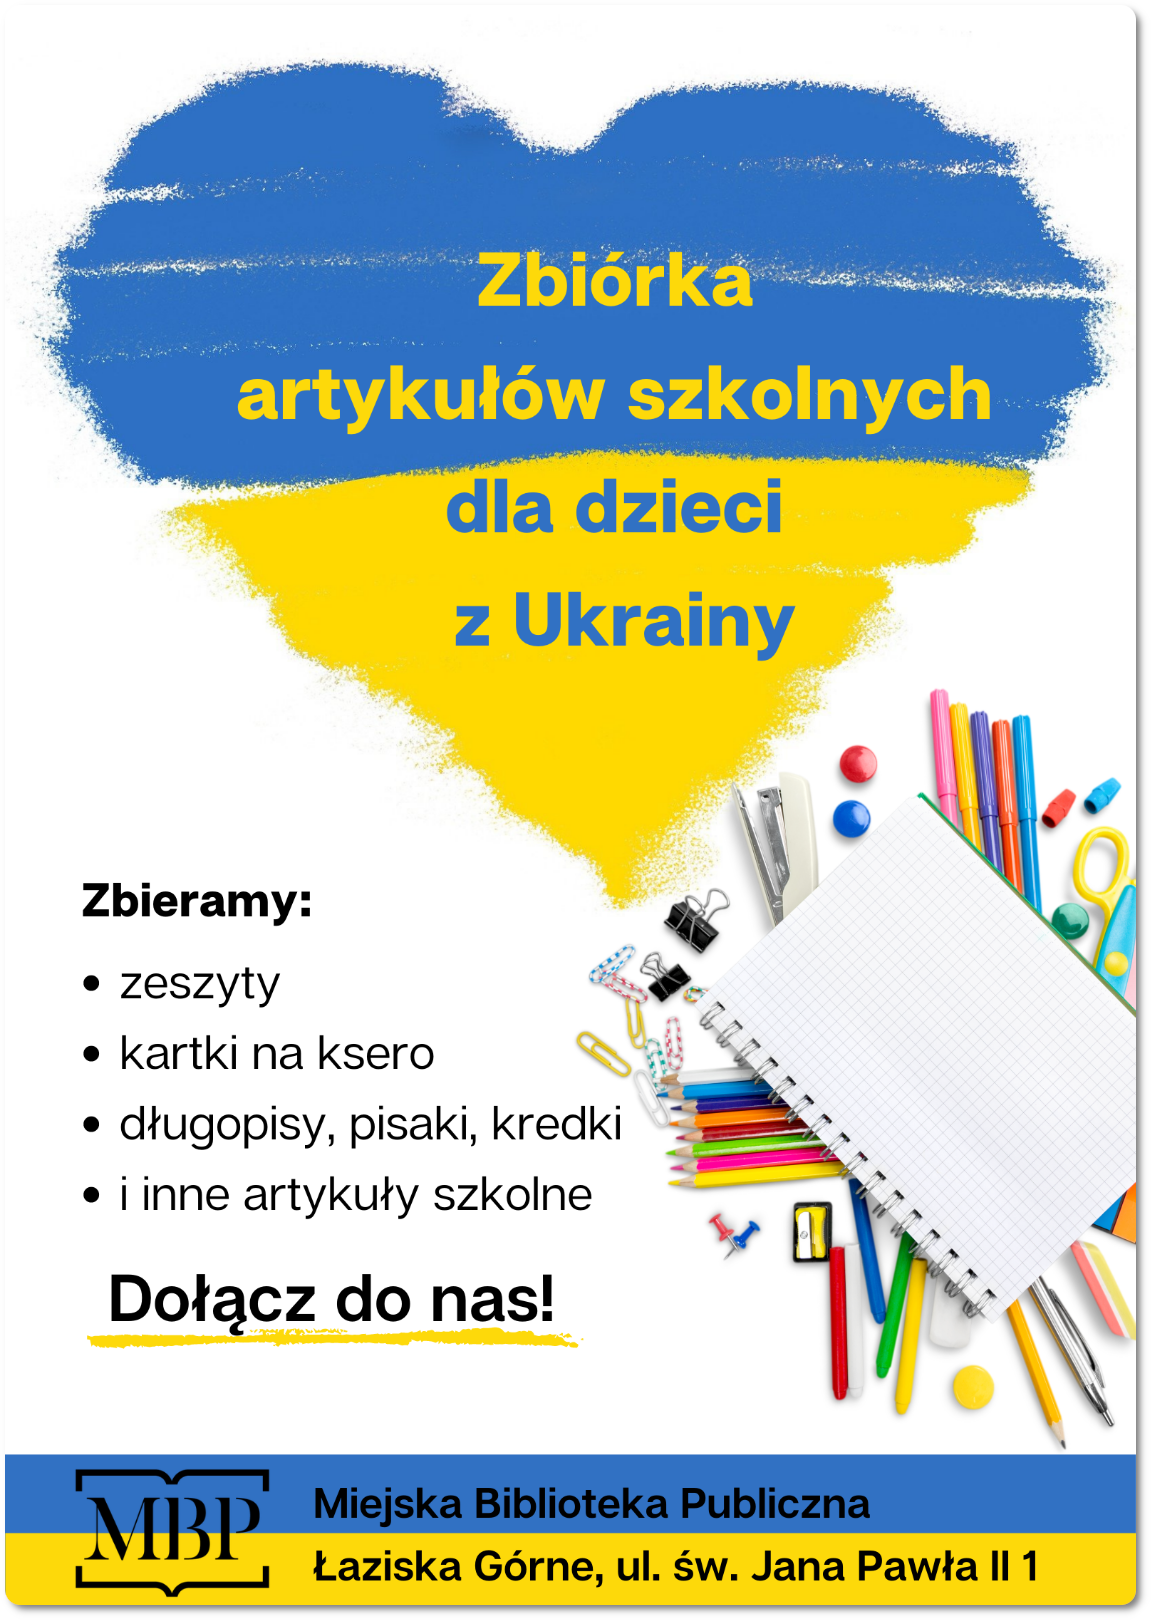 Plakat - Zbiórka artykułów szkolnych dla dzieci z Ukrainy